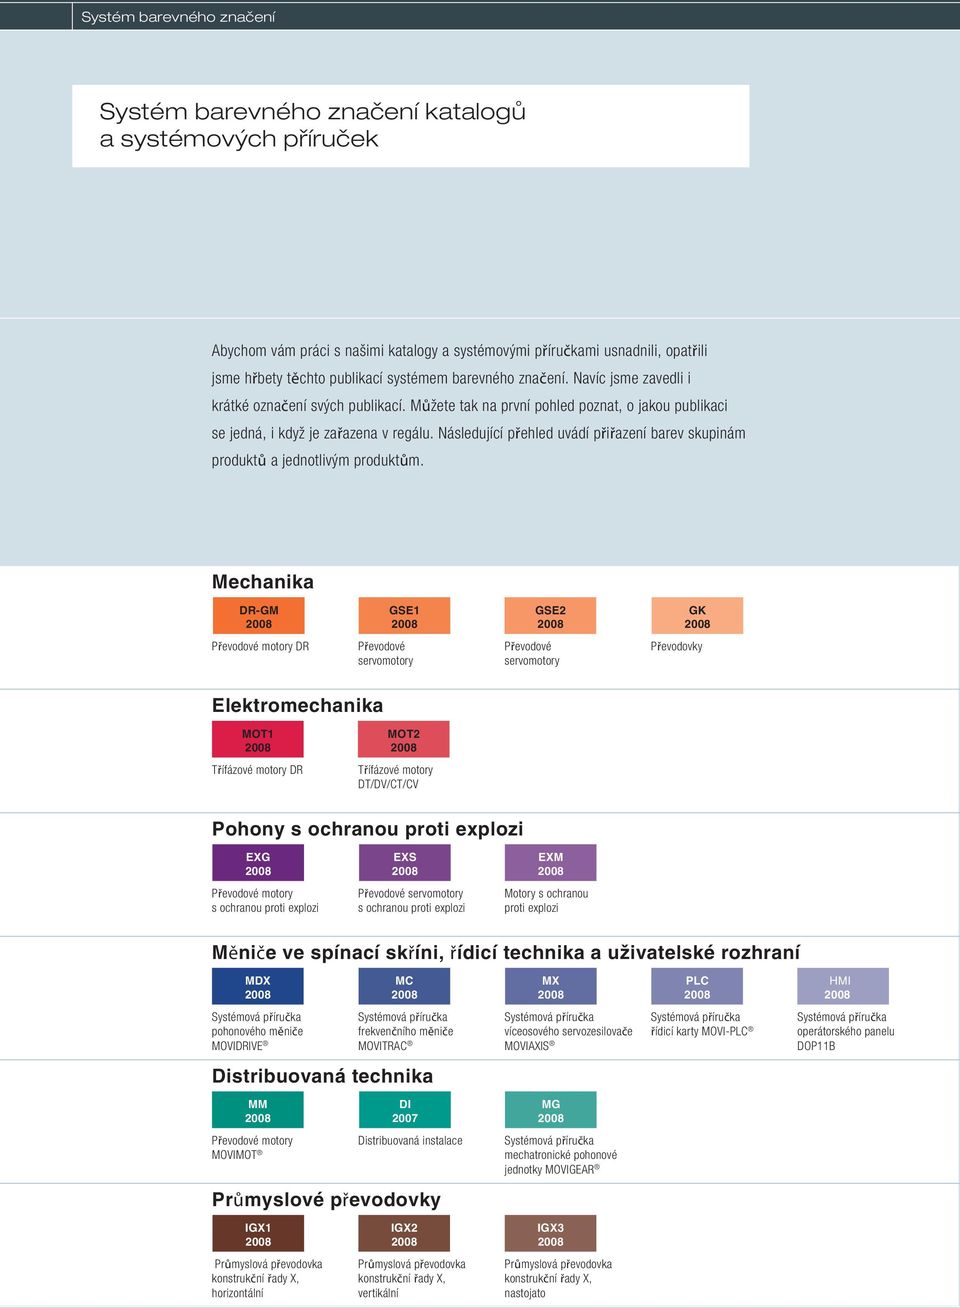 Následující přehled uvádí přiřazení barev skupinám produktů a jednotlivým produktům.